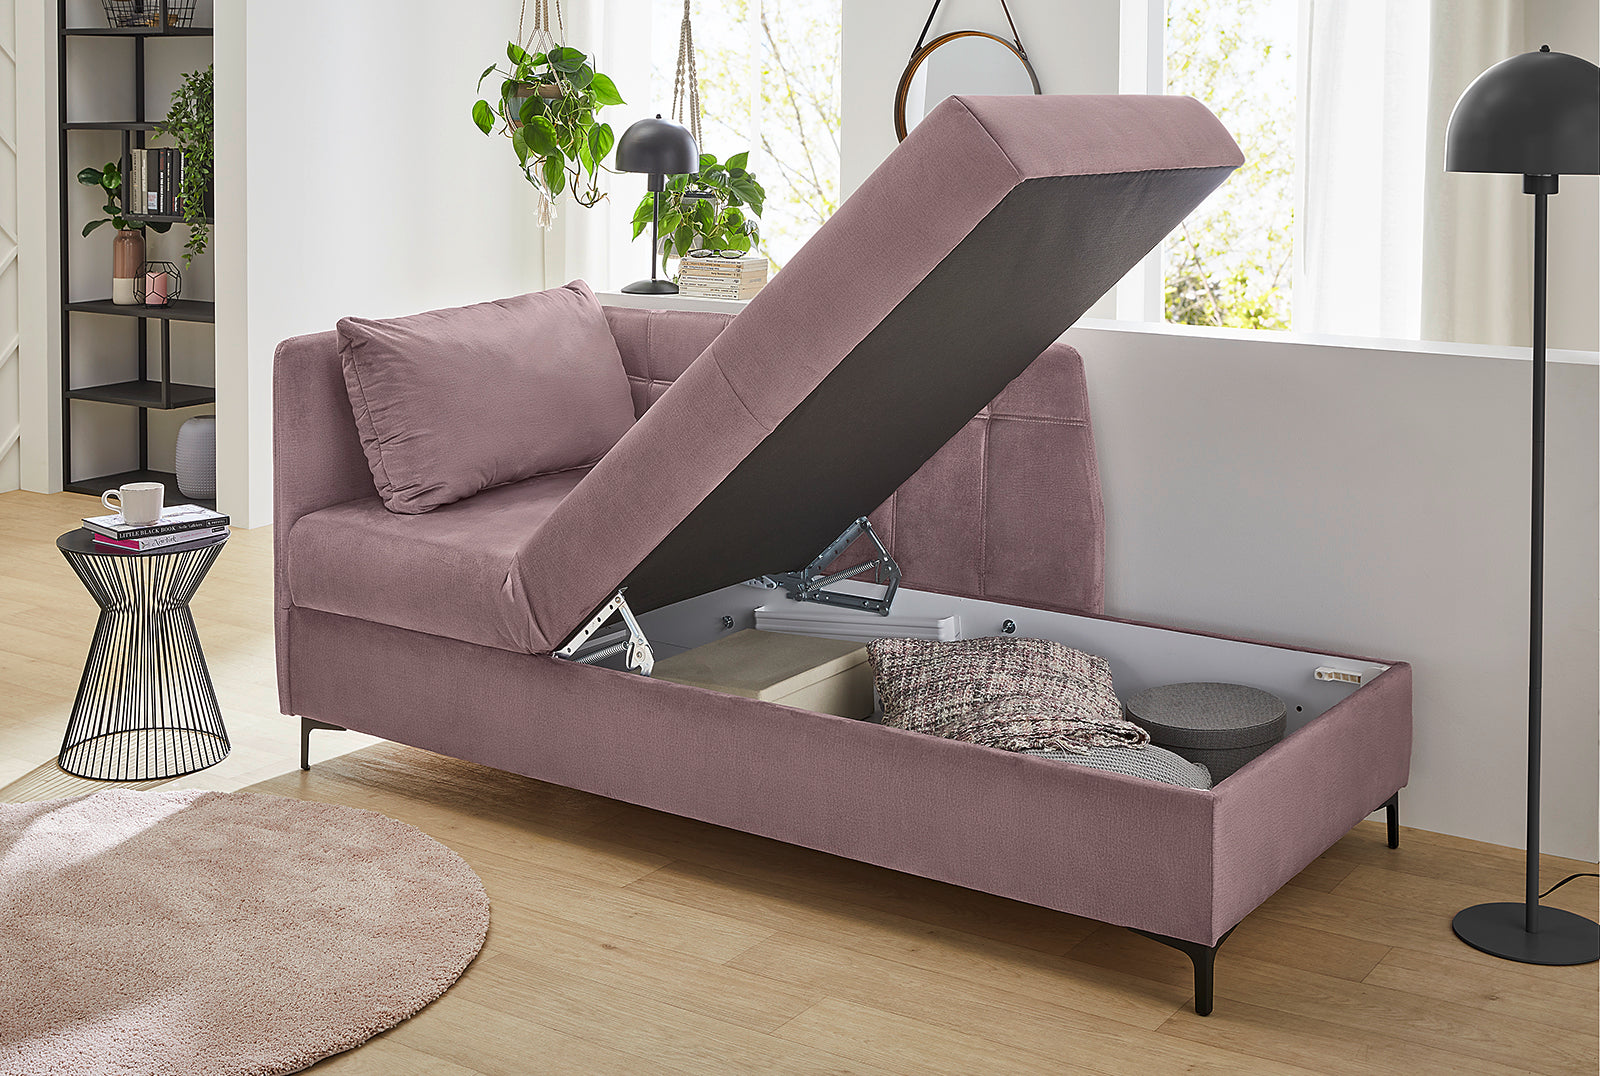 Stella fotelágy/kanapé (rózsaszín)